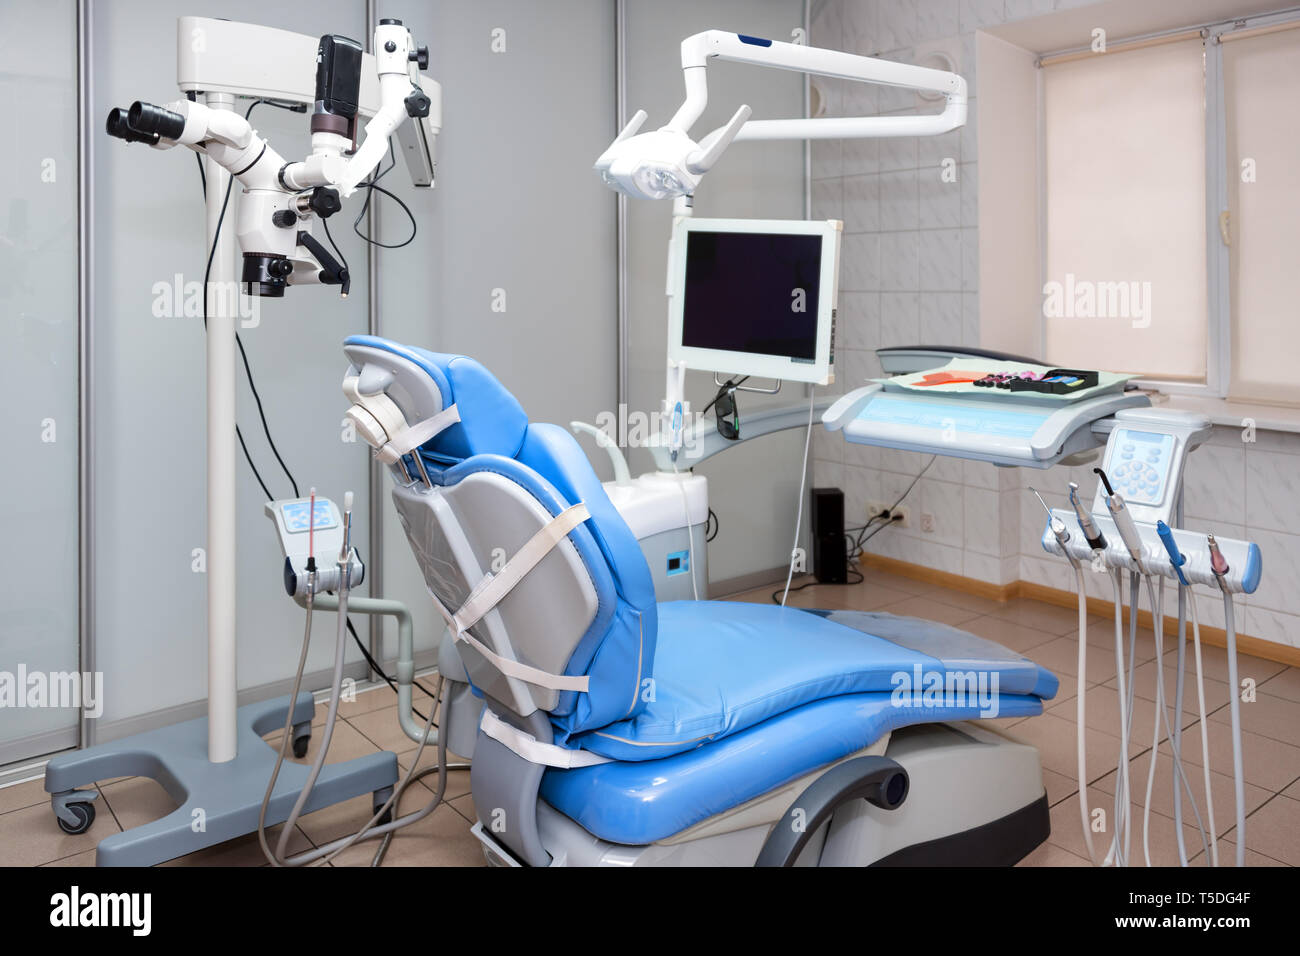 Zahnarzt. Moderne zahnmedizinische Kabinett. Zahnmedizinische Instrumente und Werkzeuge in der modernen Klinik, professionelle Zahnheilkunde Stuhl warten, von kieferorthopäden verwendet werden Stockfoto